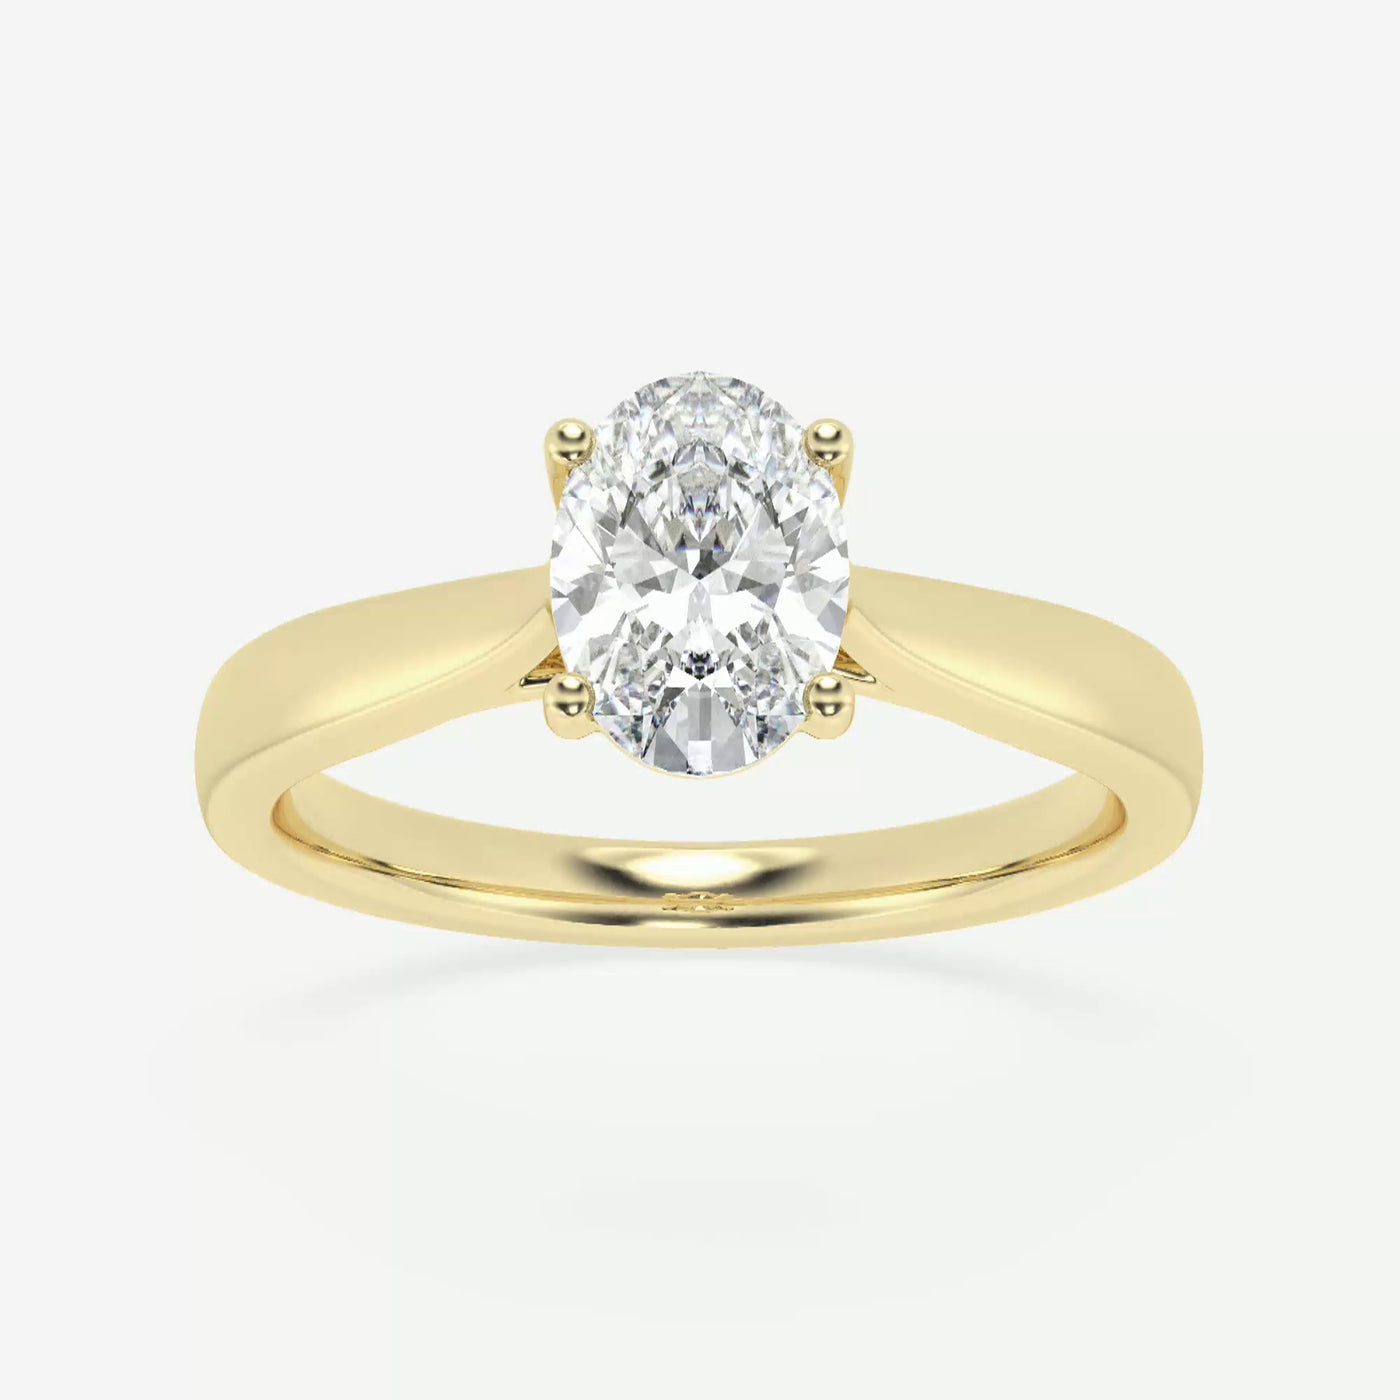 _main_image@SKU:LGD-JOR1030-GY4~#carat_1.00#diamond-quality_fg,-vs2+#metal_18k-yellow-gold